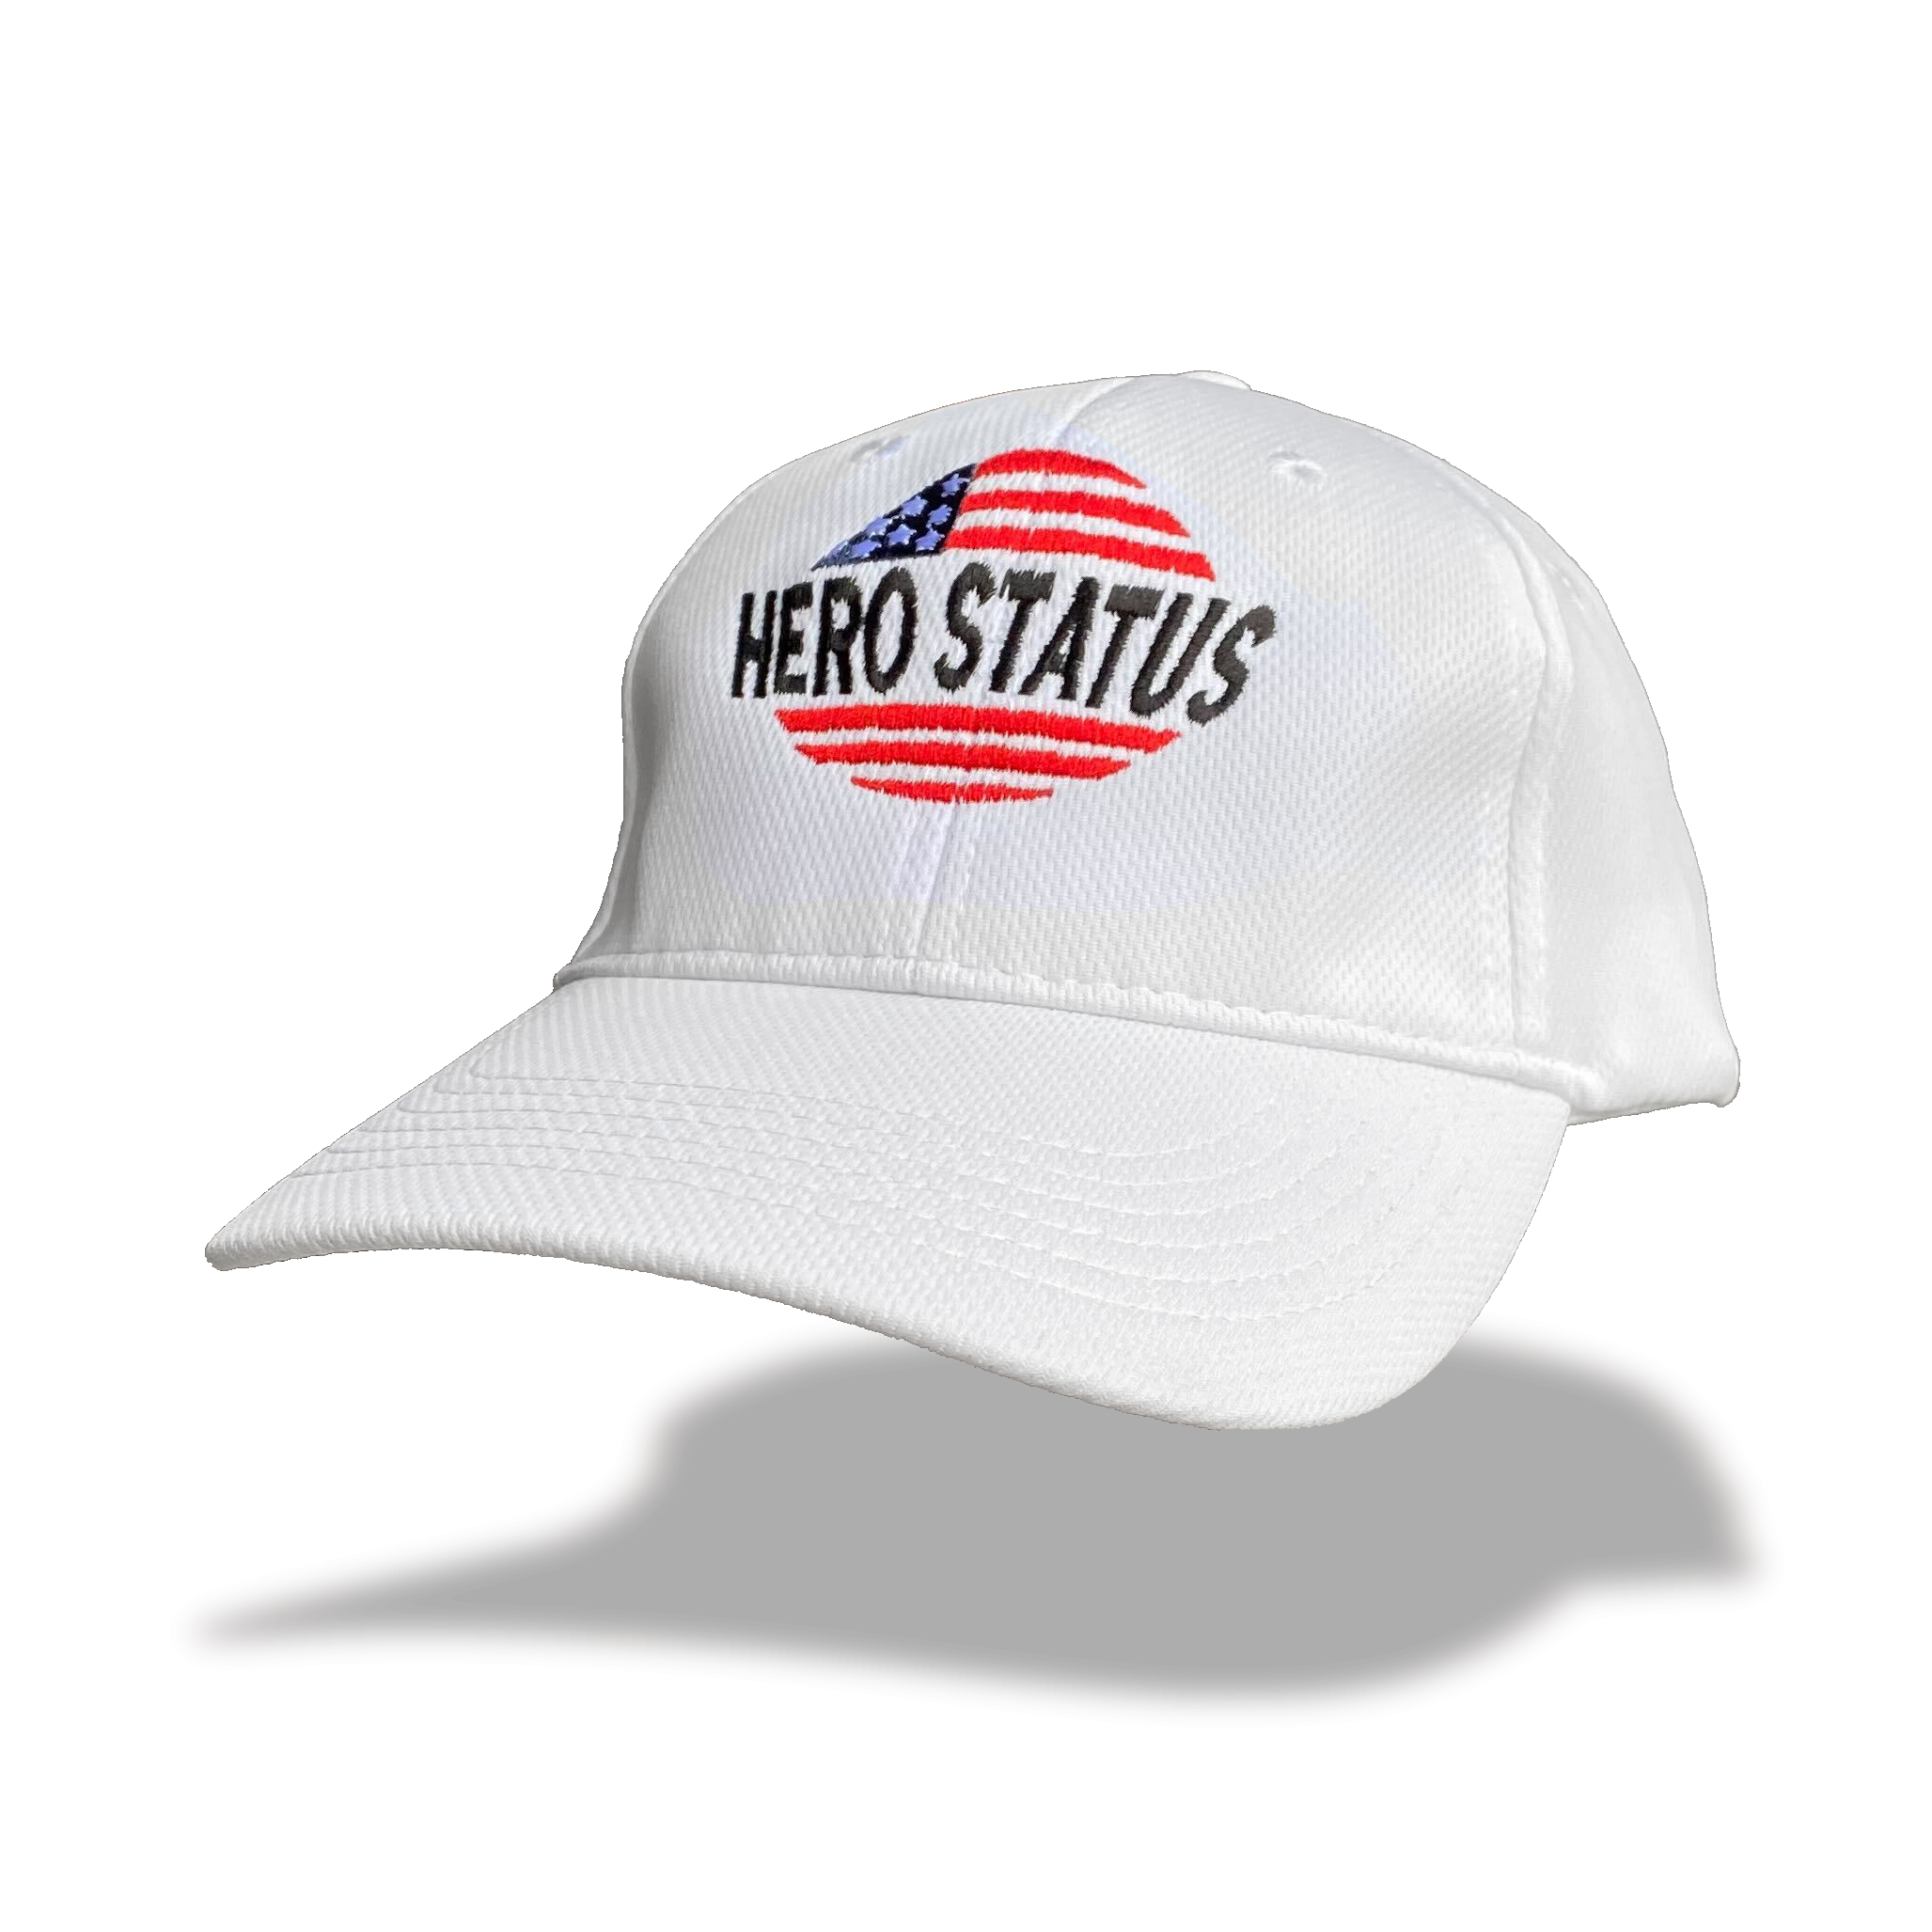 Hero Status Velocity Performance Hat